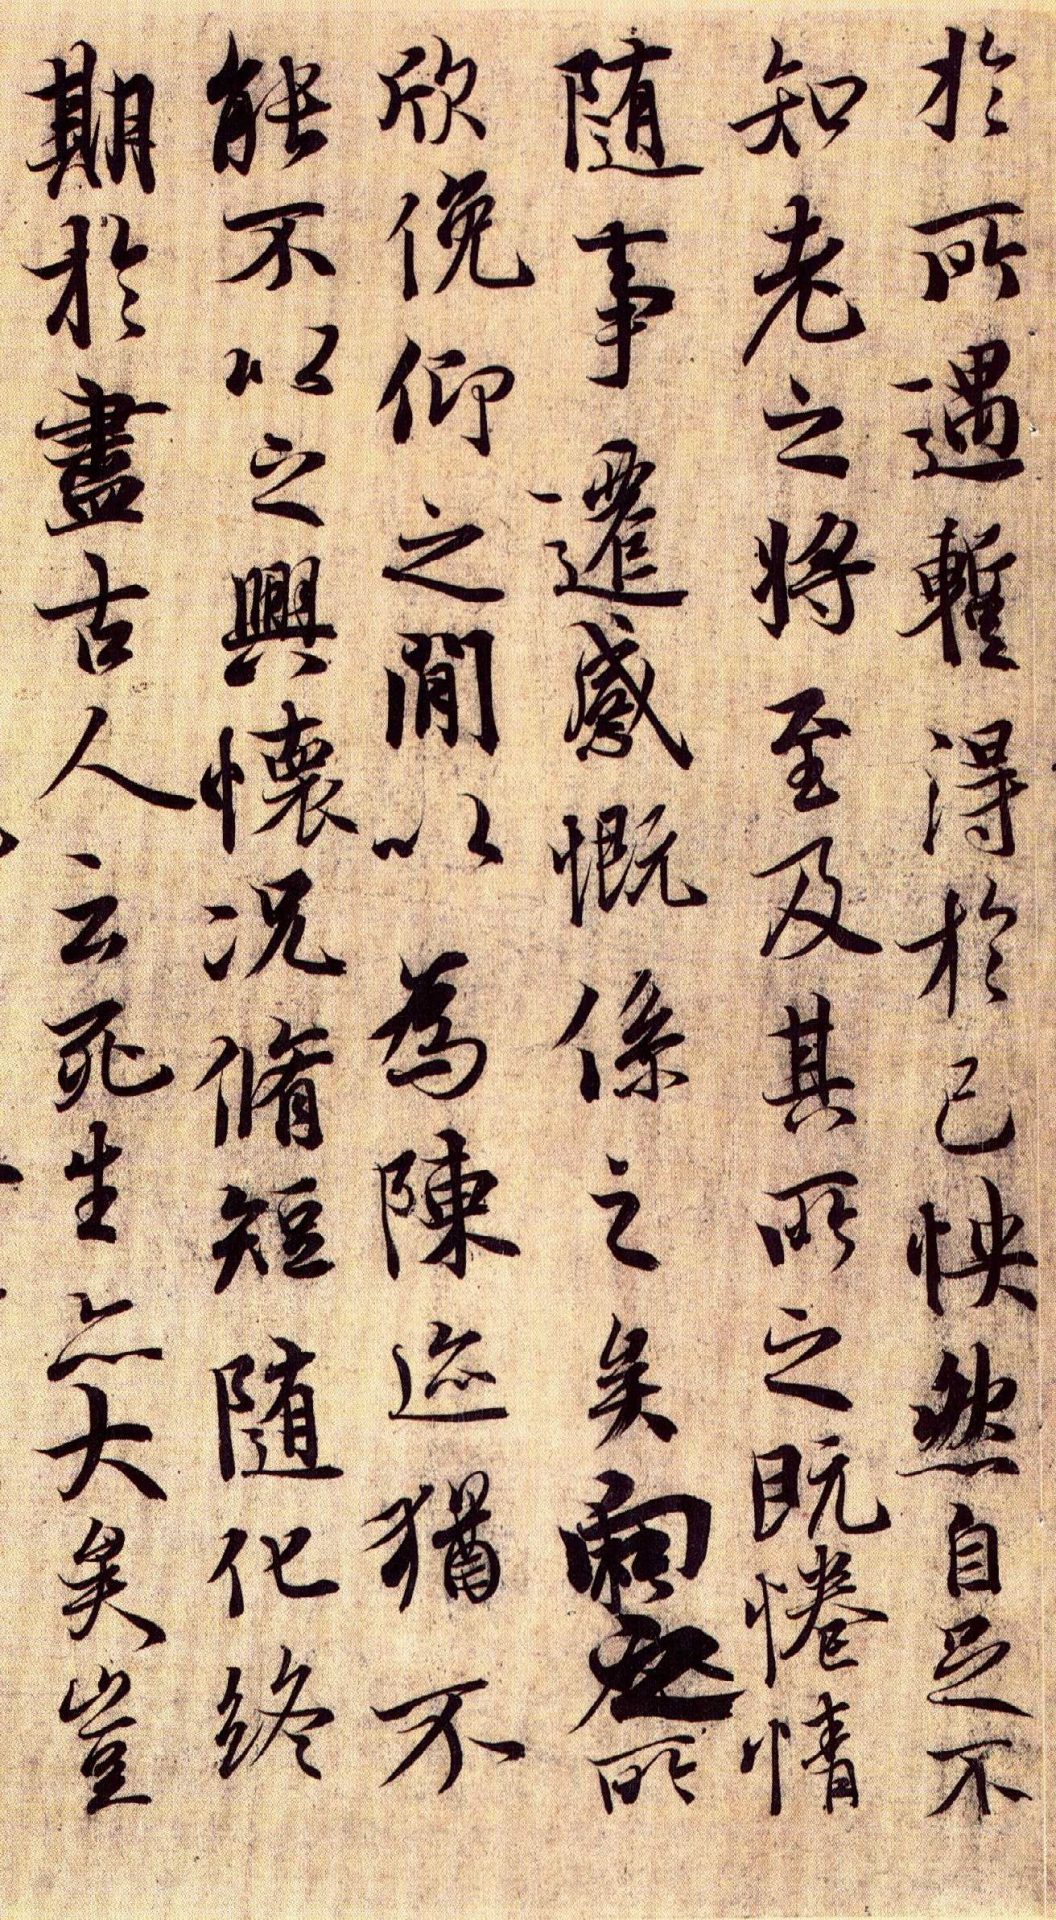 Scrisoare chinezeasca